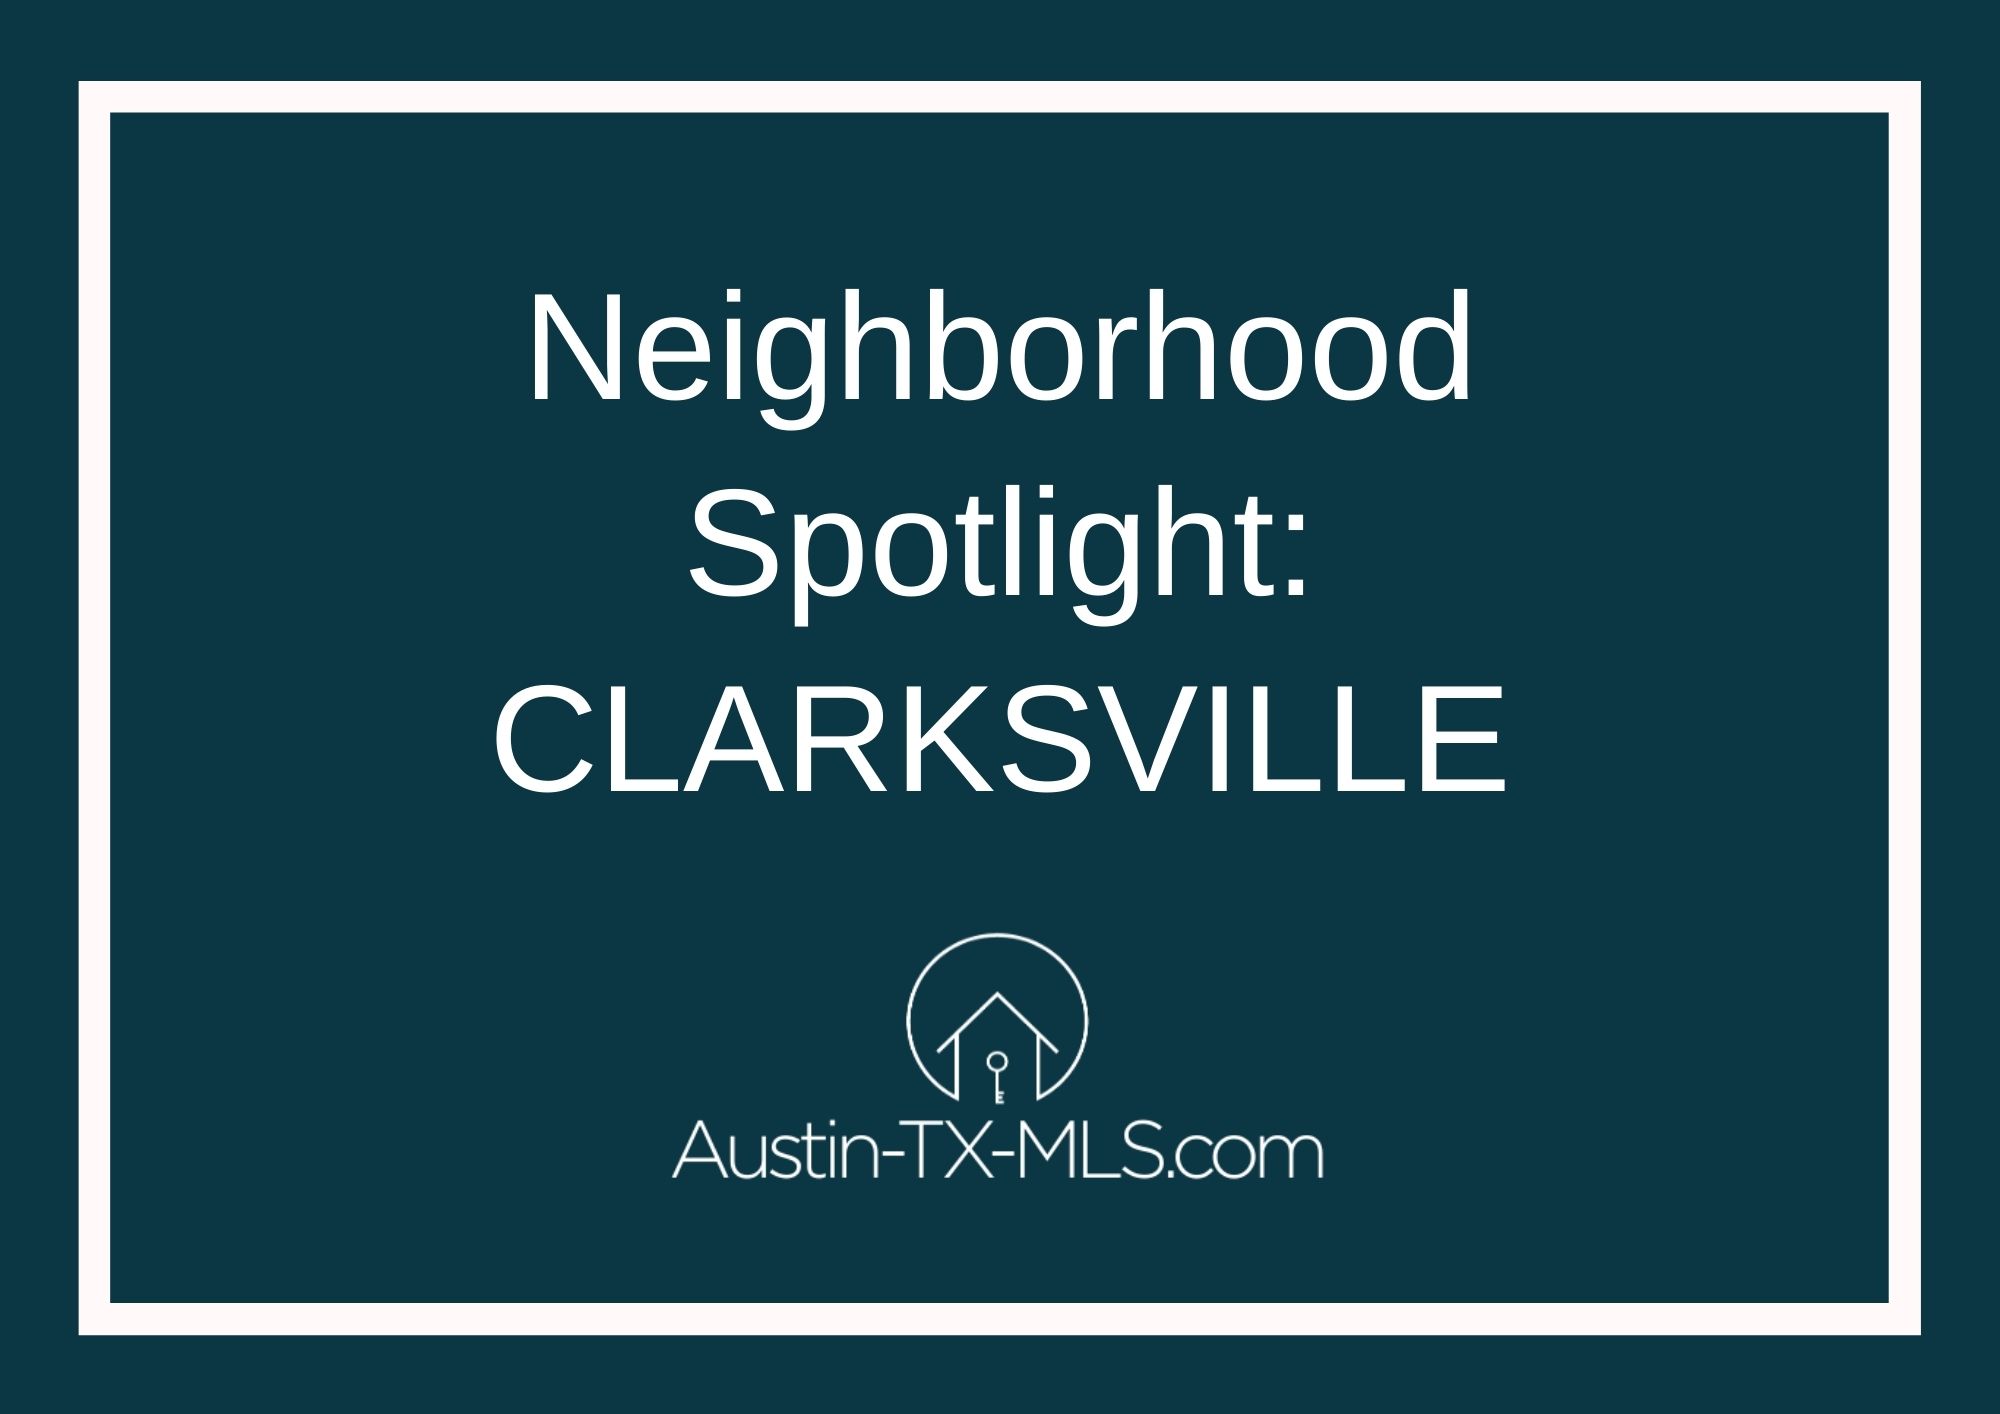 Clarksville Neighborhood Spotlight Austin Texas real estate